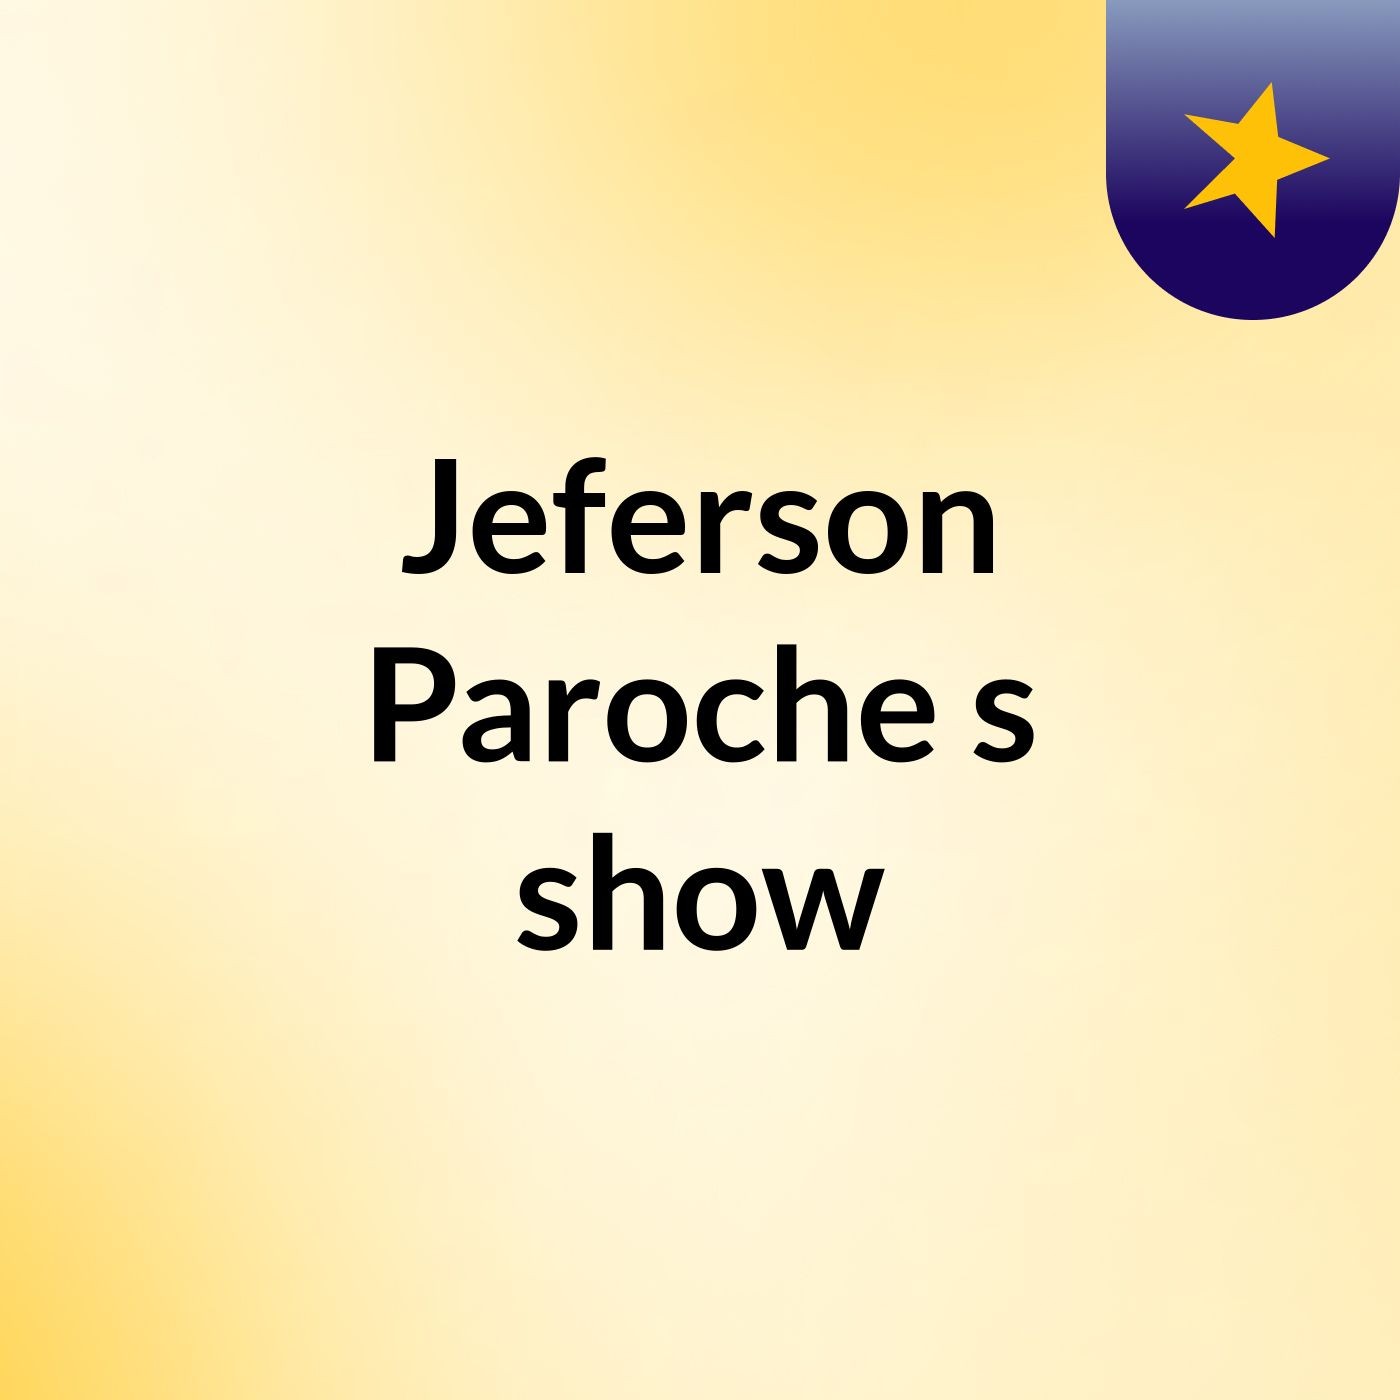 Jeferson Paroche's show